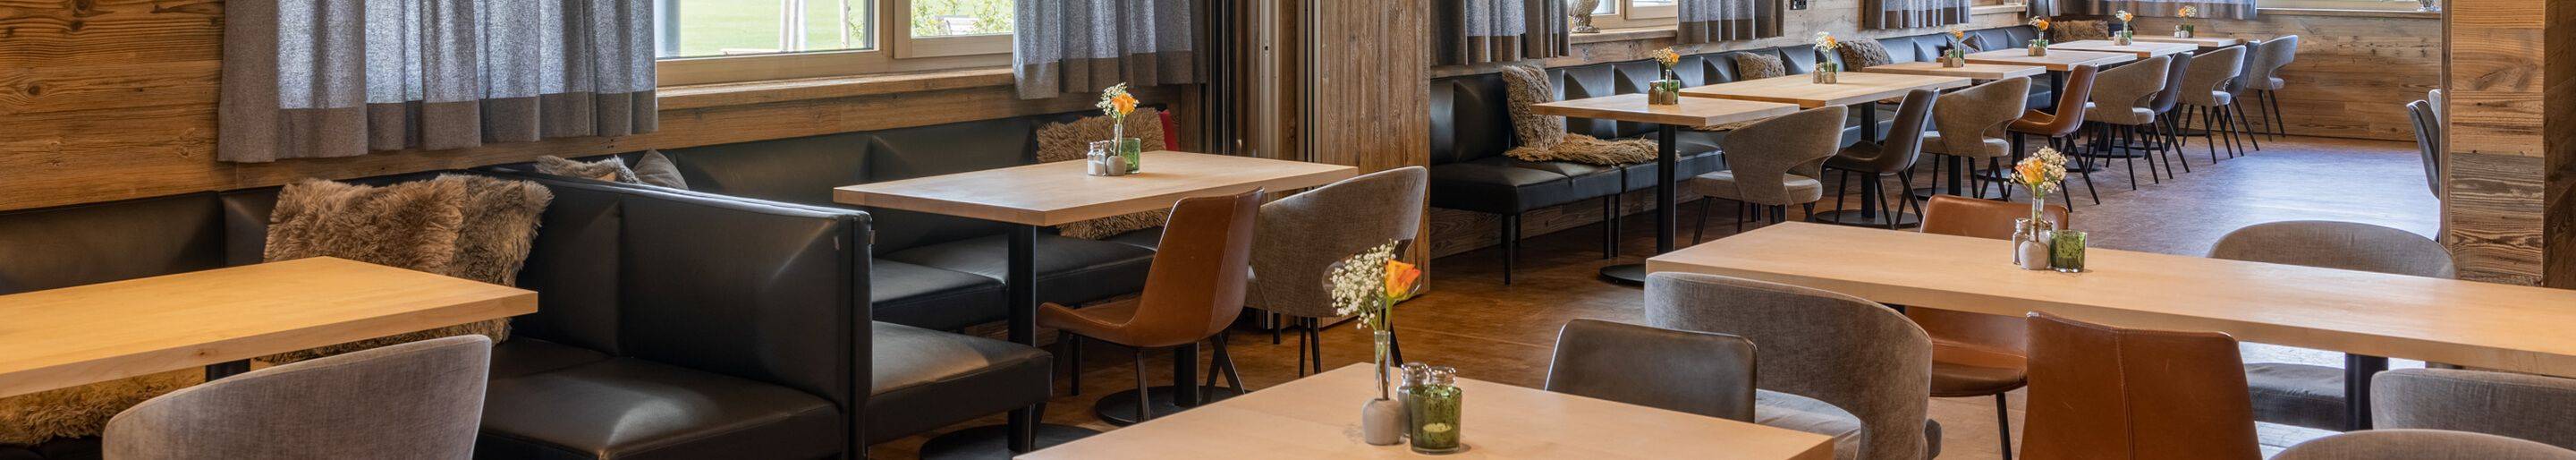 Indoor Restaurantstühle für Ihre Gastronomie und Hotellerie